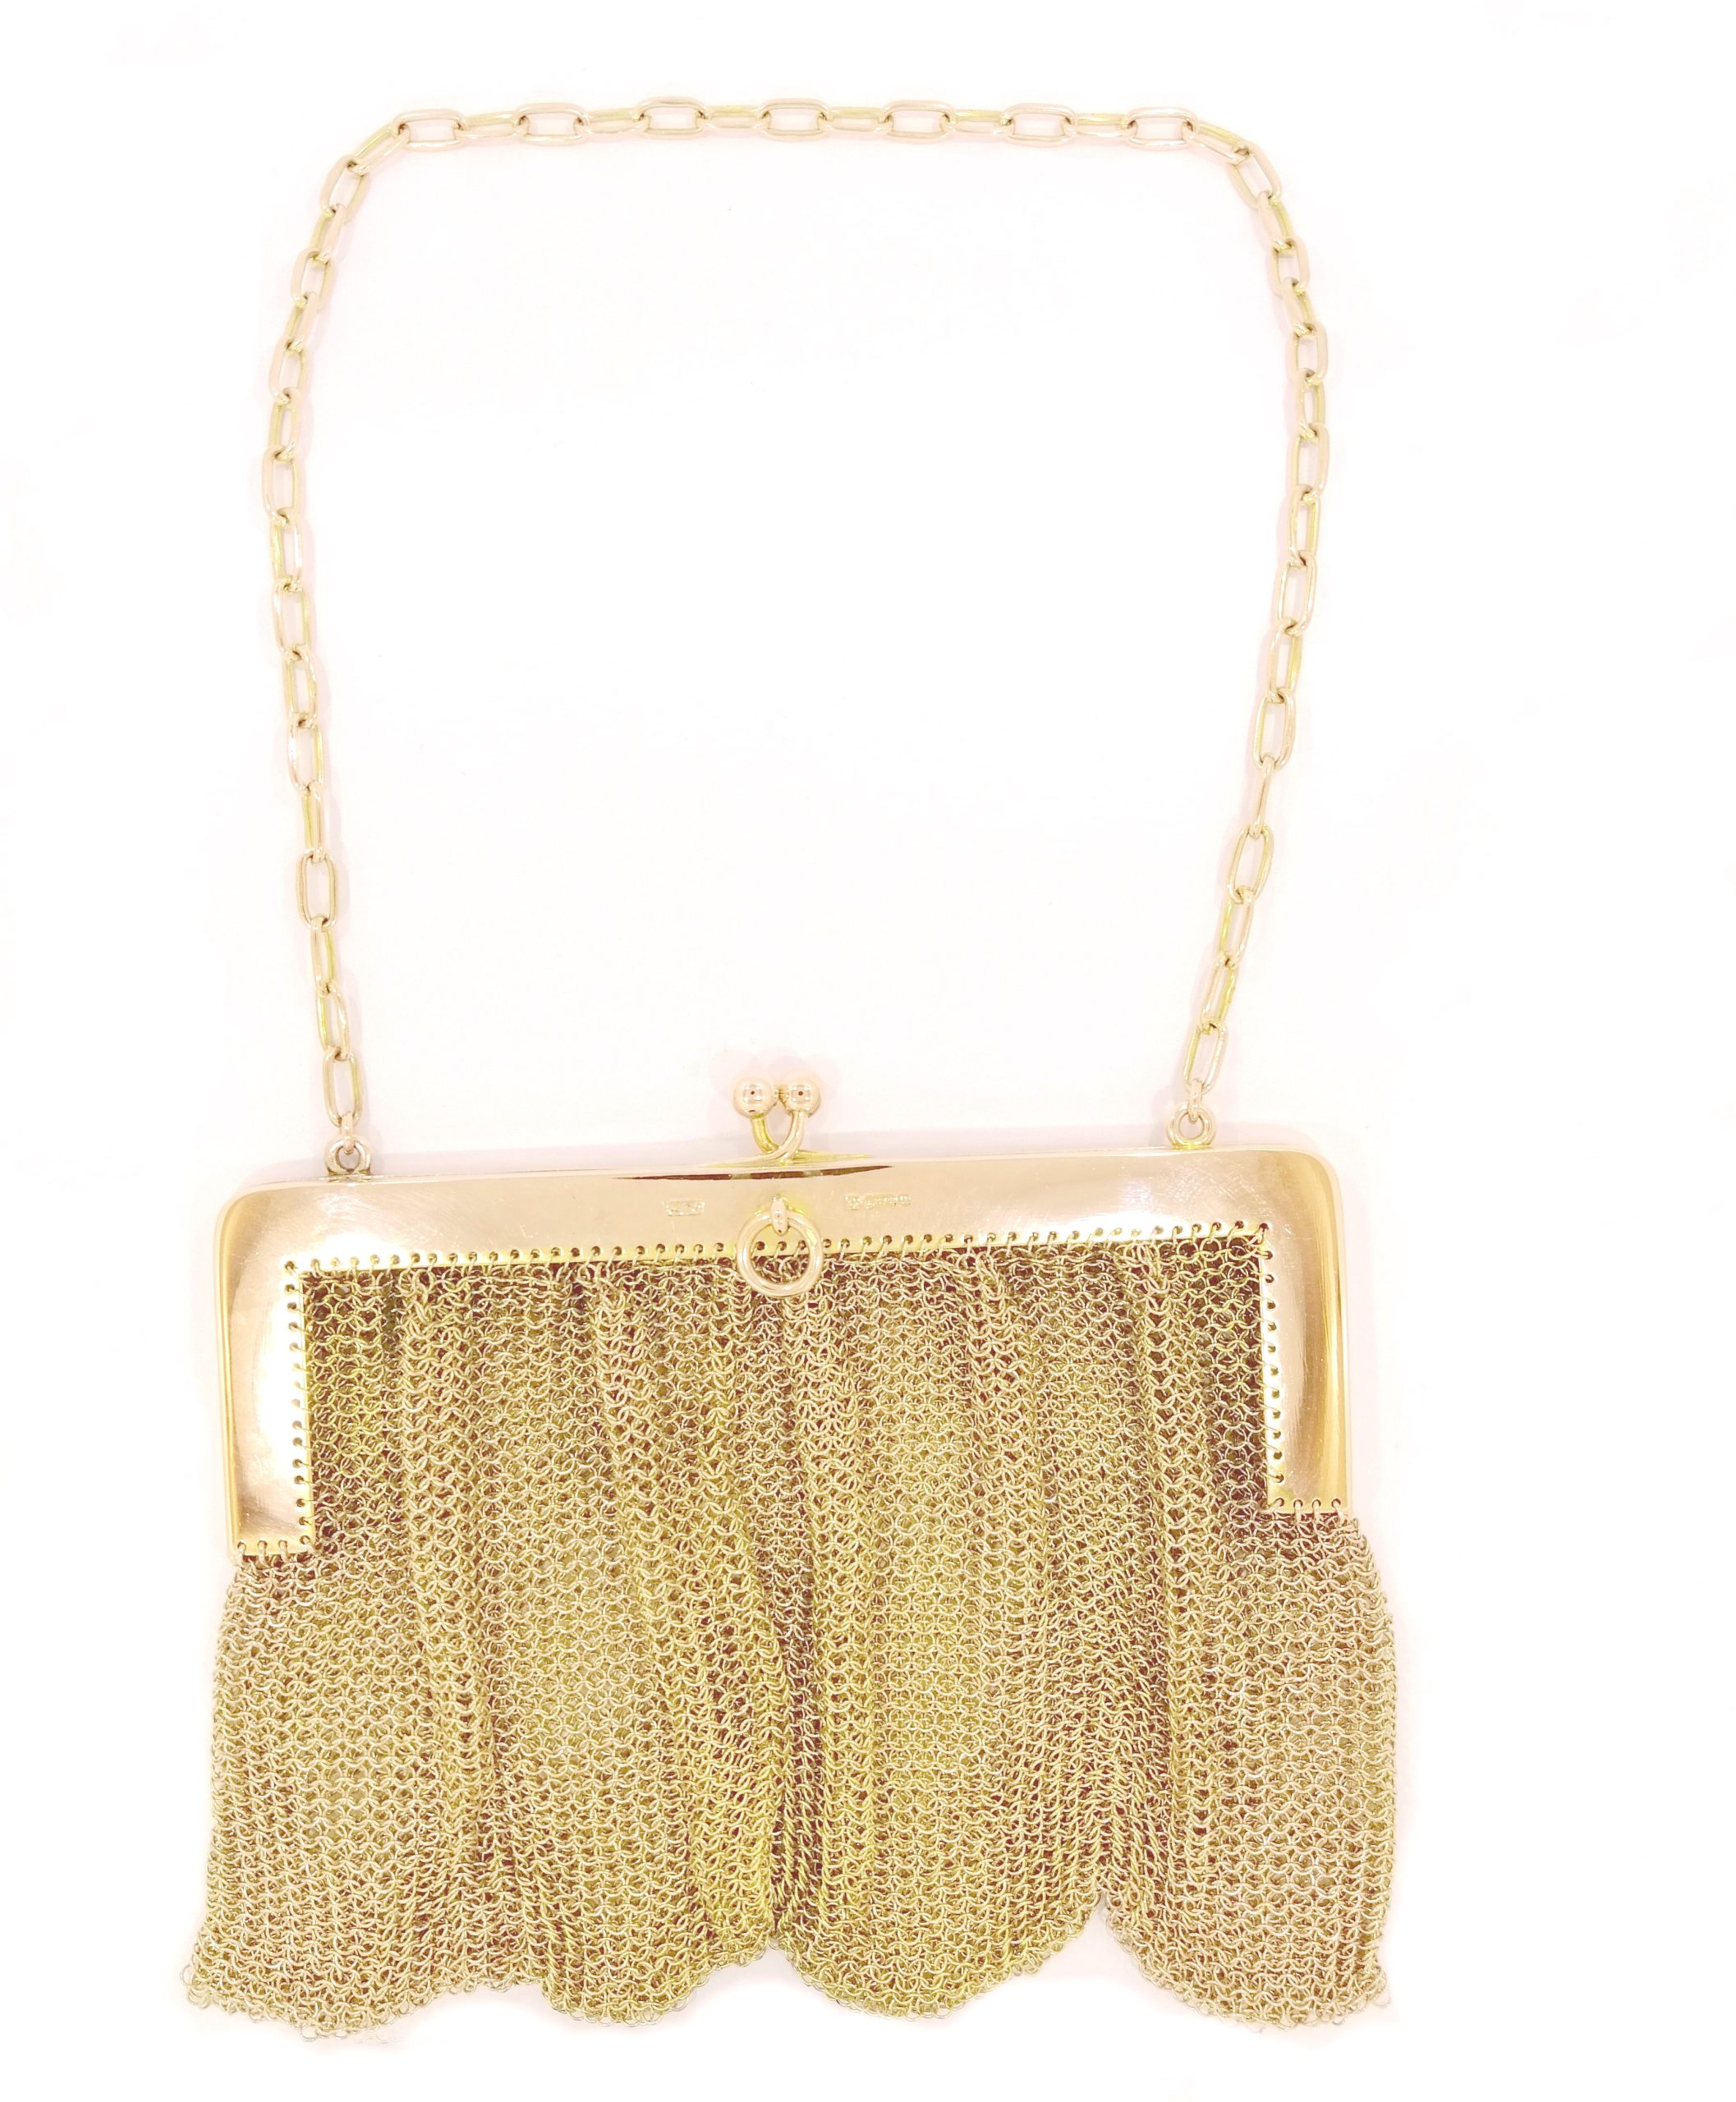 YSL White and Gold Bag | Beautiful handbags, Fancy bags, Bags designer